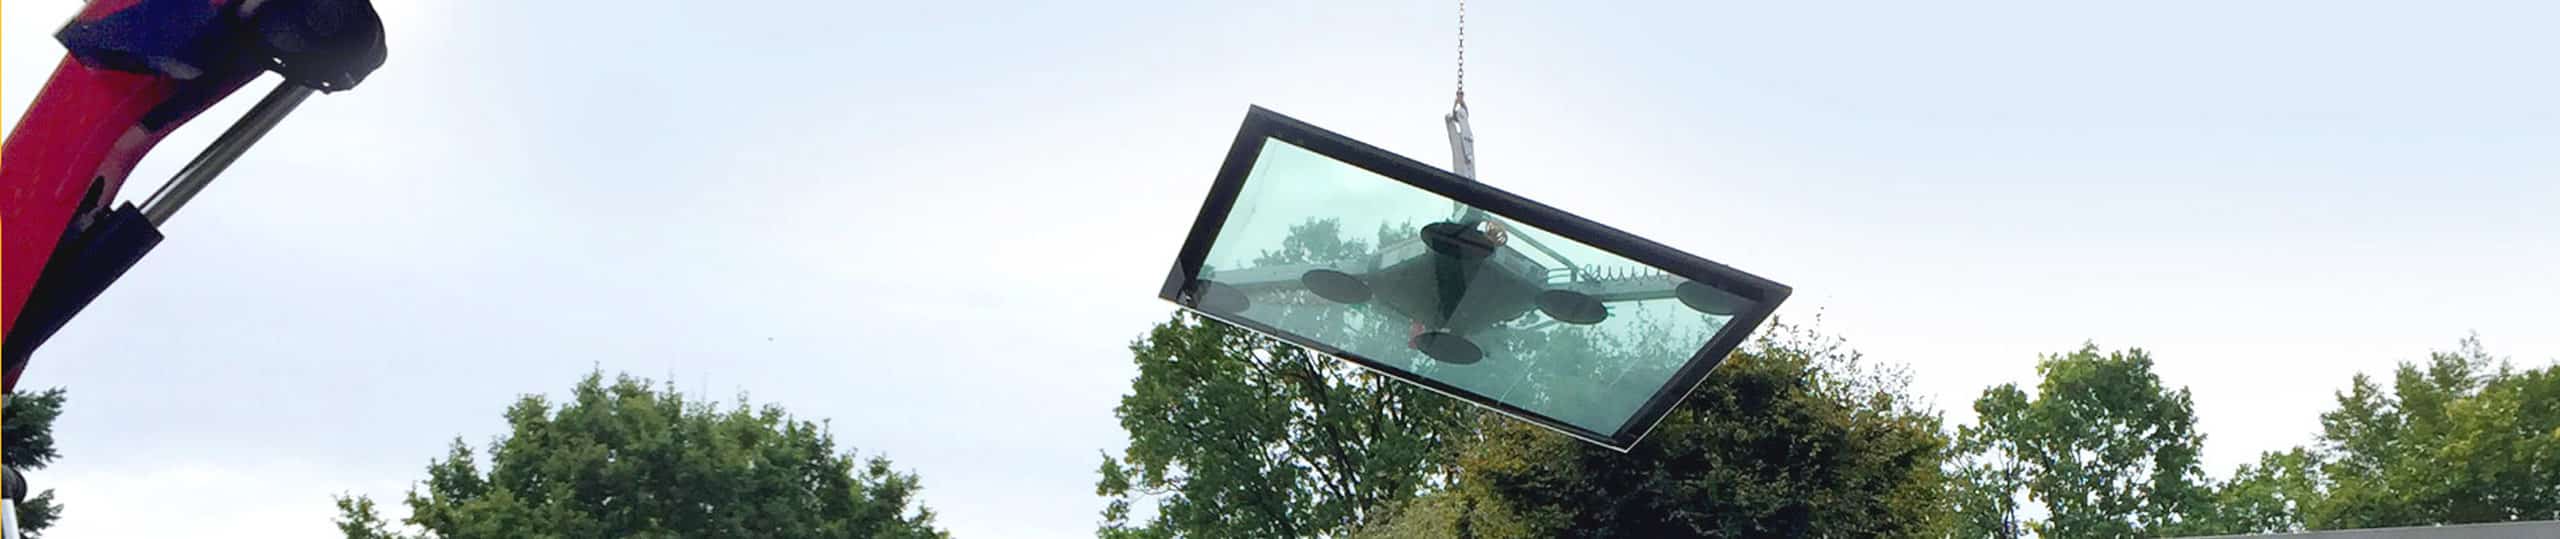 Montage einer begehbaren Terrassenverglasung mit Hilfe eines Glassaugers / Vakuumsaugers